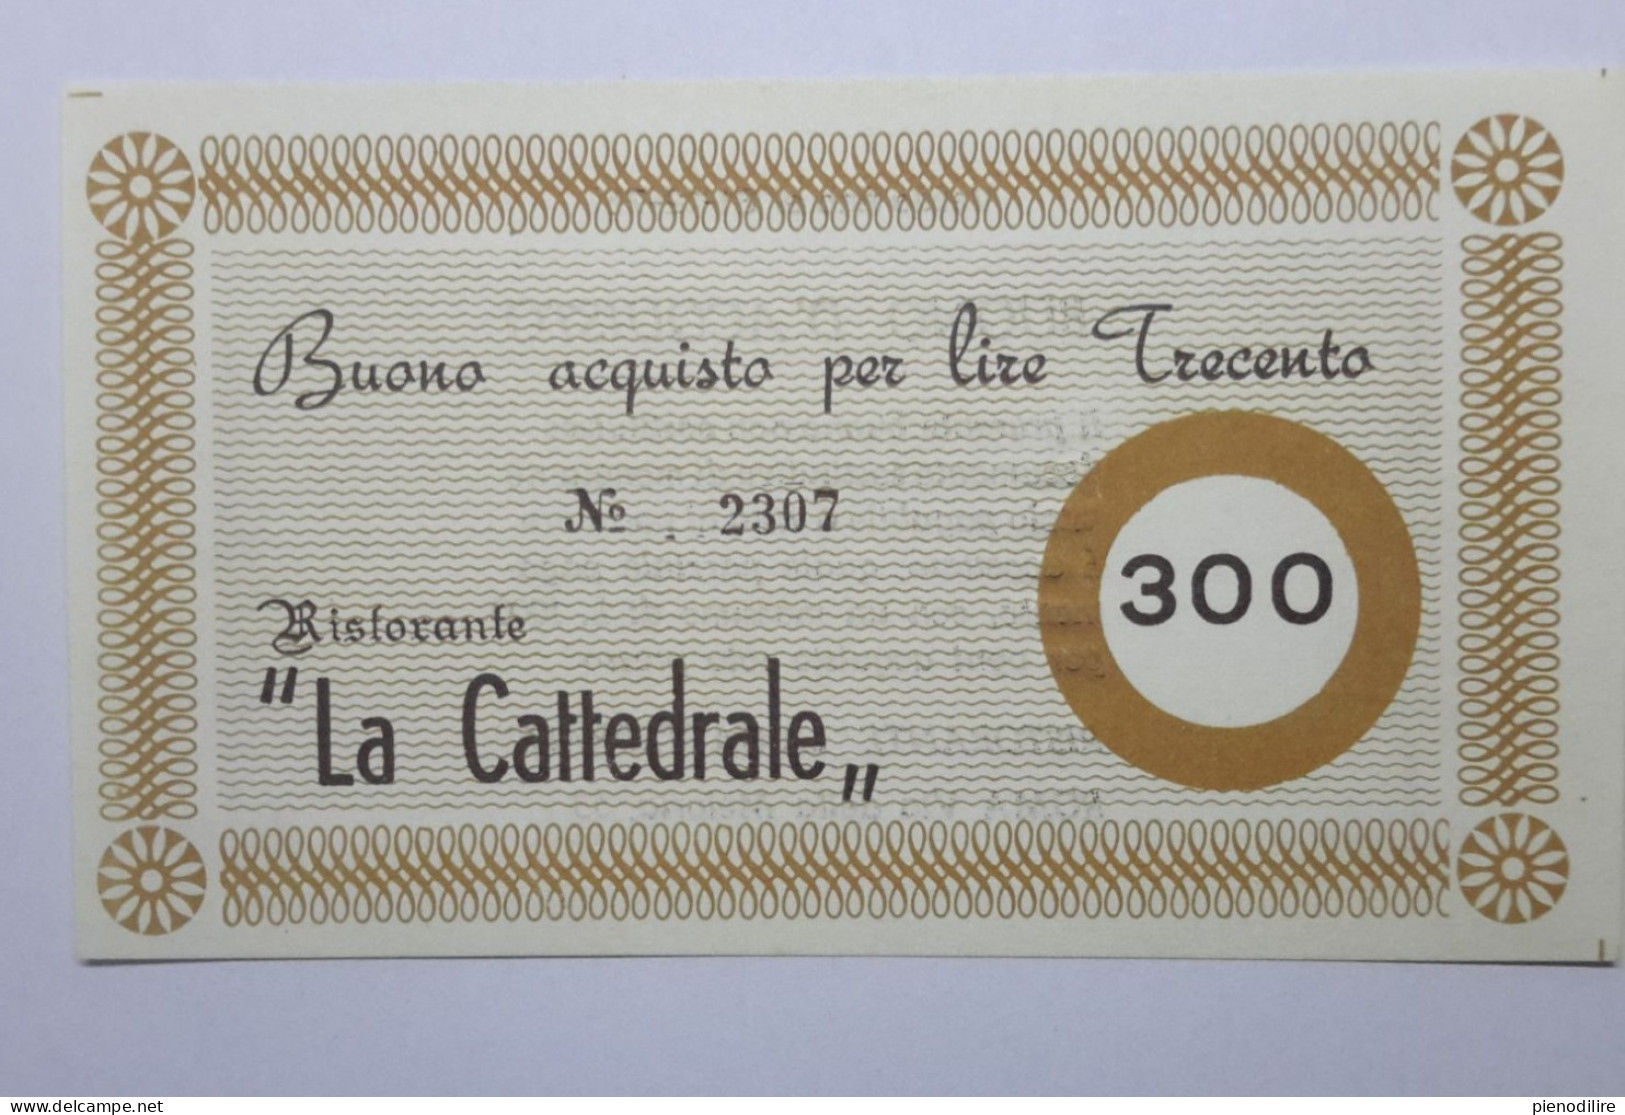 LOTTO 4Pz. 100 200 300 400 LIRE BUONI ACQUISTO RISTORANTE LA CATTEDRALE ROMA VALIDO FINO AL 31.12.1976 (A.4) - [10] Assegni E Miniassegni